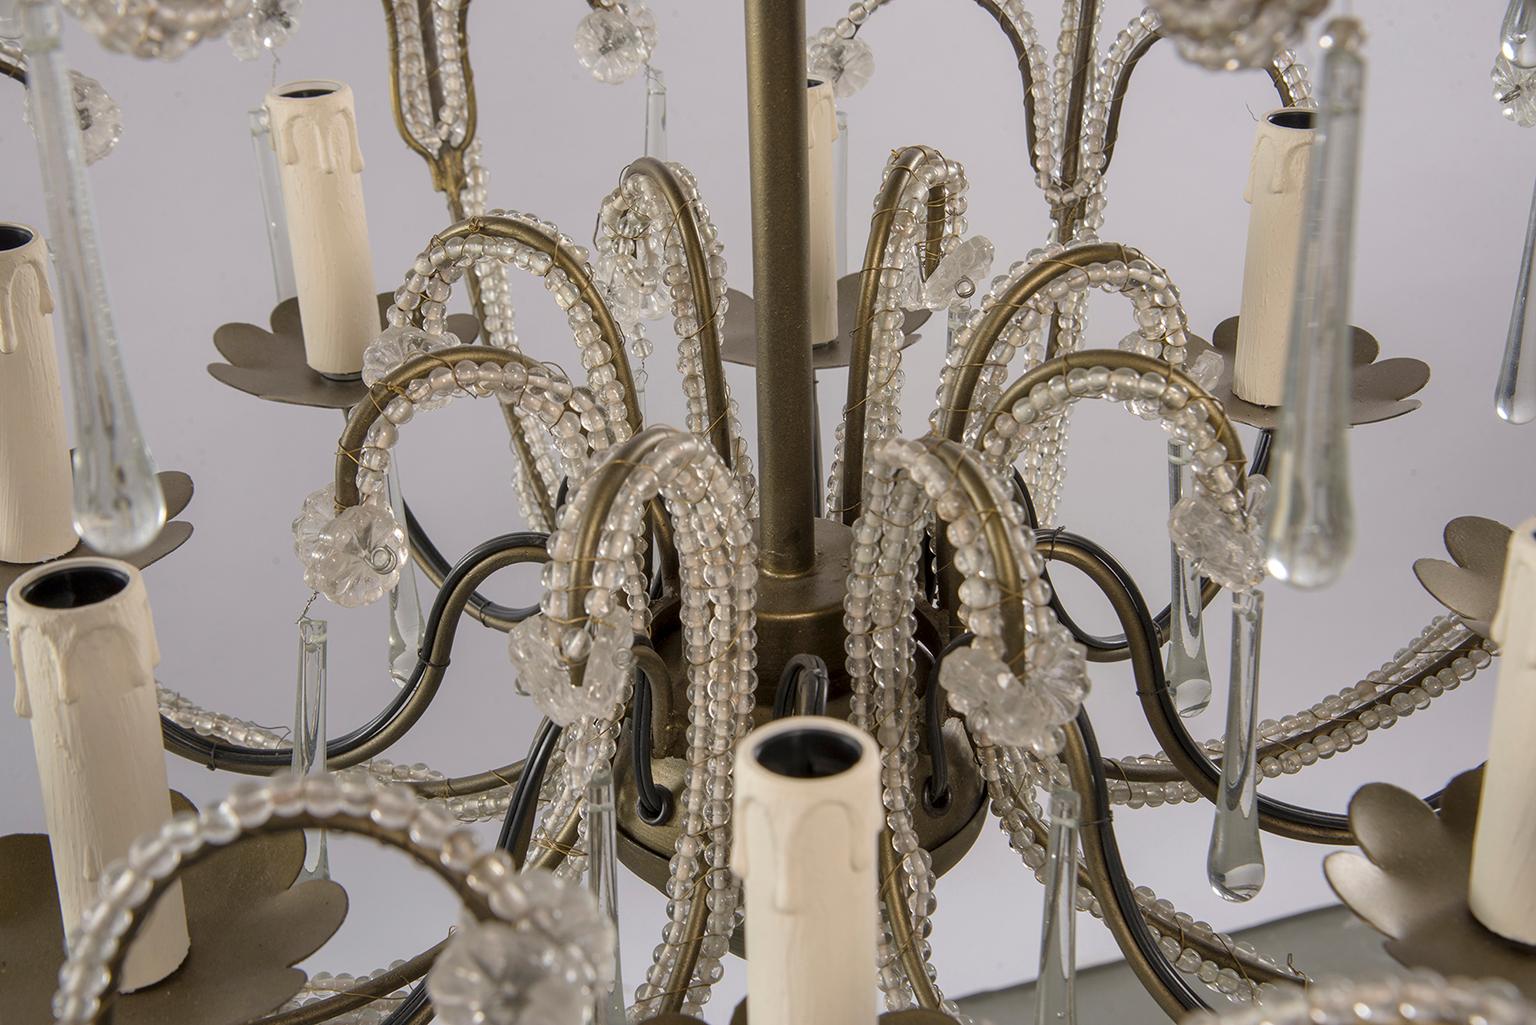 Zeitgenössischer französischer Perlenkronleuchter im traditionellen Stil. Acht kerzenförmige Lichter mit kandelabergroßen Fassungen, goldfarbener, korbförmiger Rahmen, der mit klaren Kristallperlen bedeckt und mit Kristallspitzen akzentuiert ist.